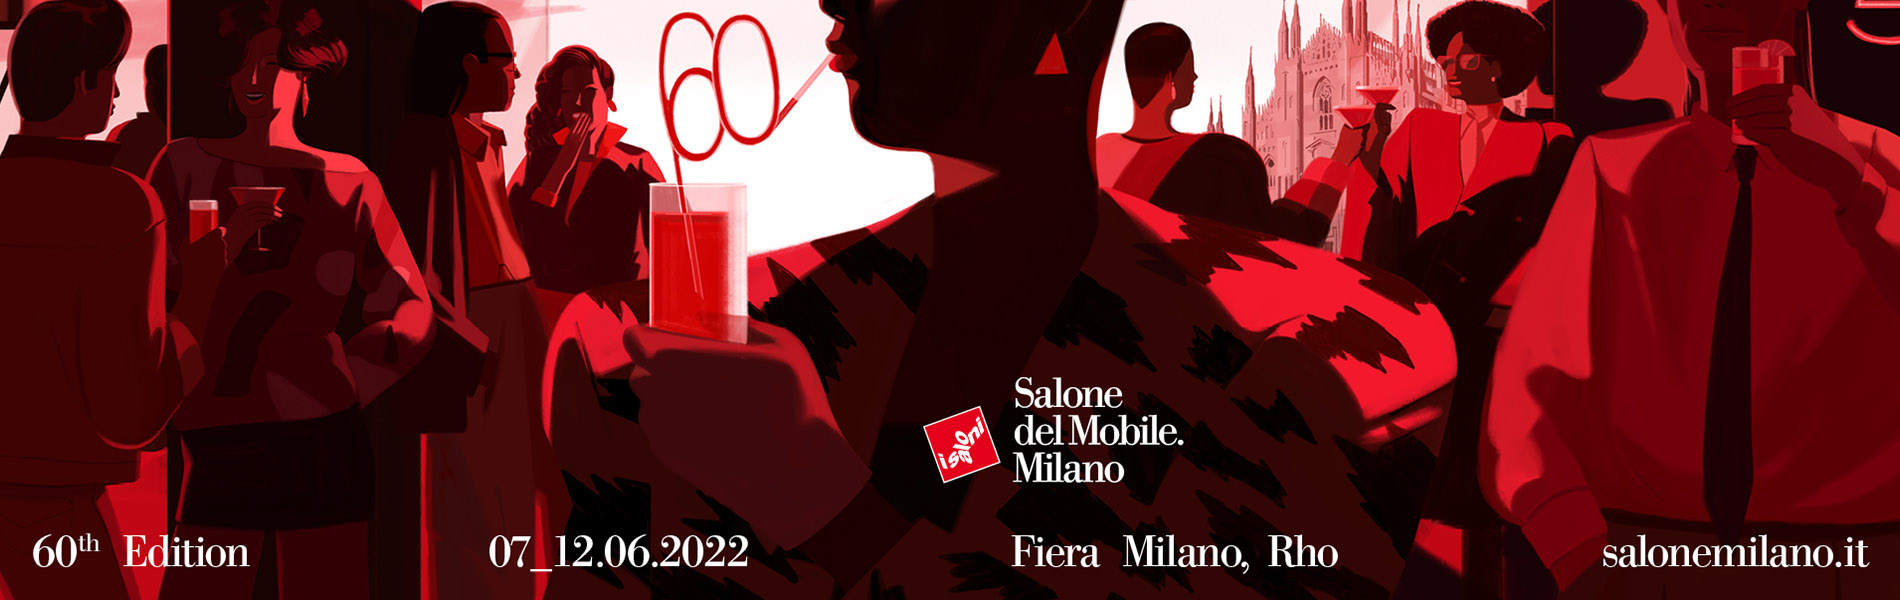 Retrouvez Sunbrella à Milan pour le Salone del Mobile, du 7 au 11 Juin 2022